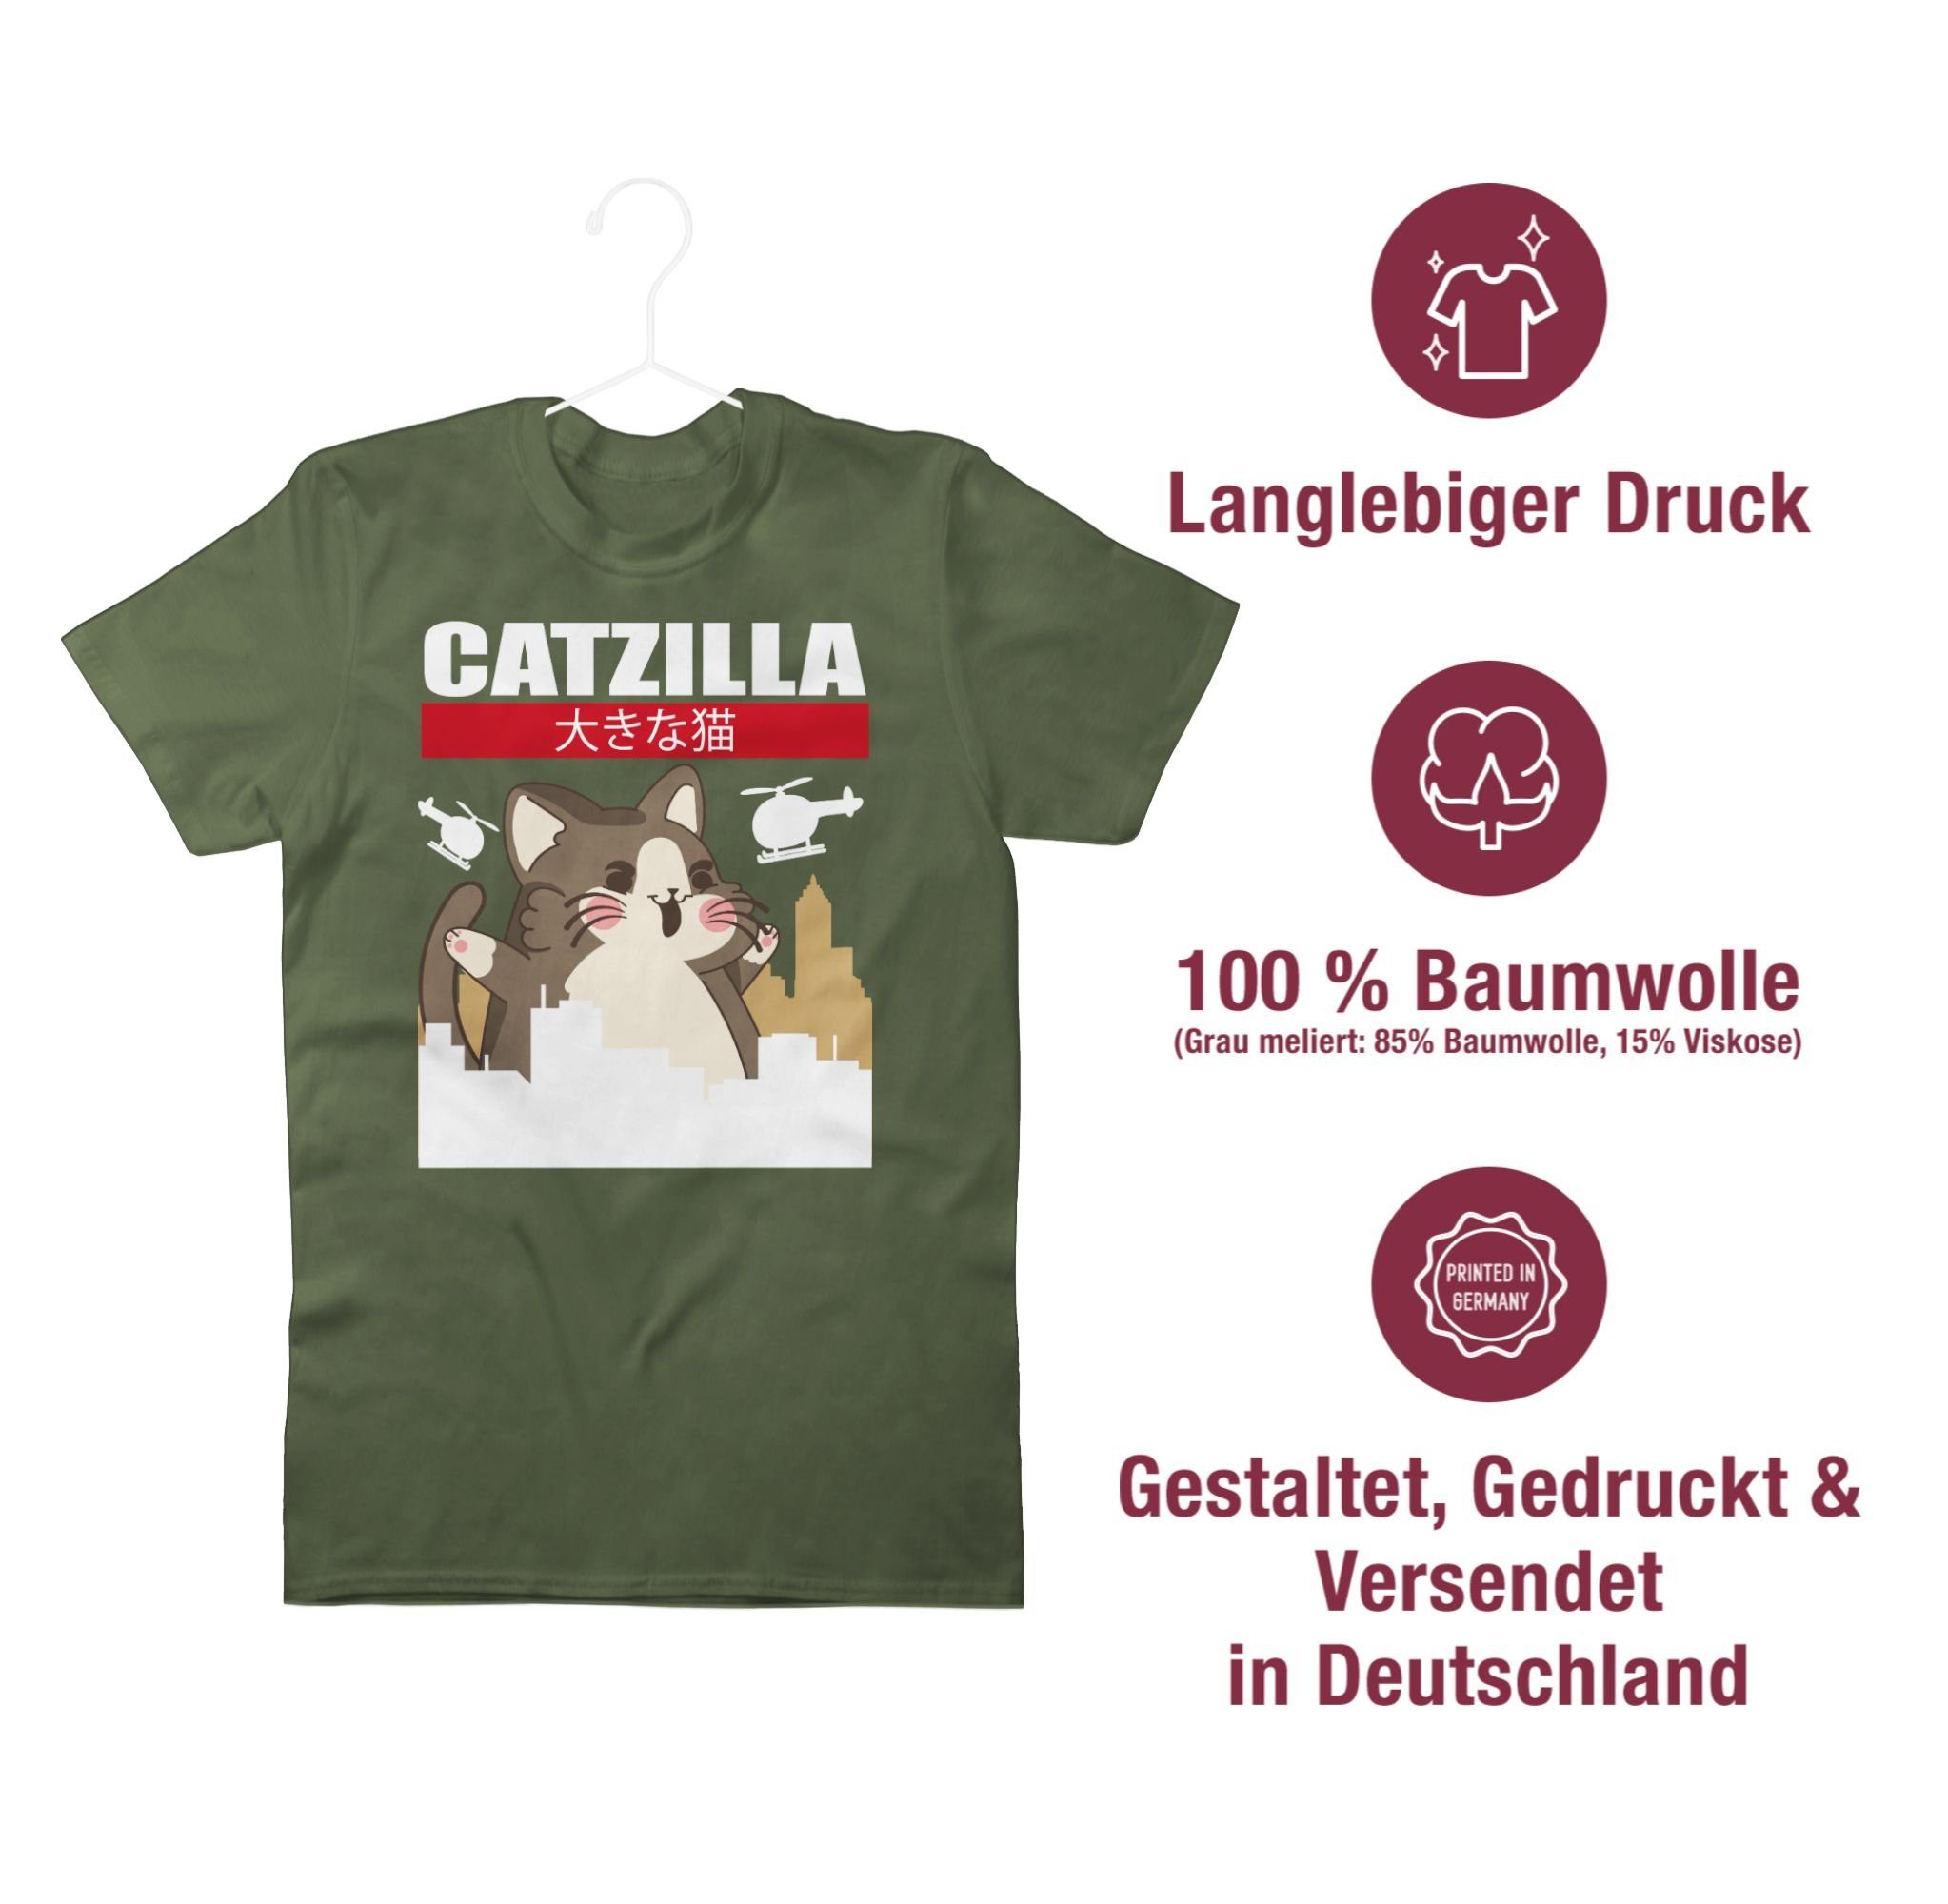 Shirtracer Cat Big Catzilla 3 Army Grün T-Shirt Anime Geschenke -